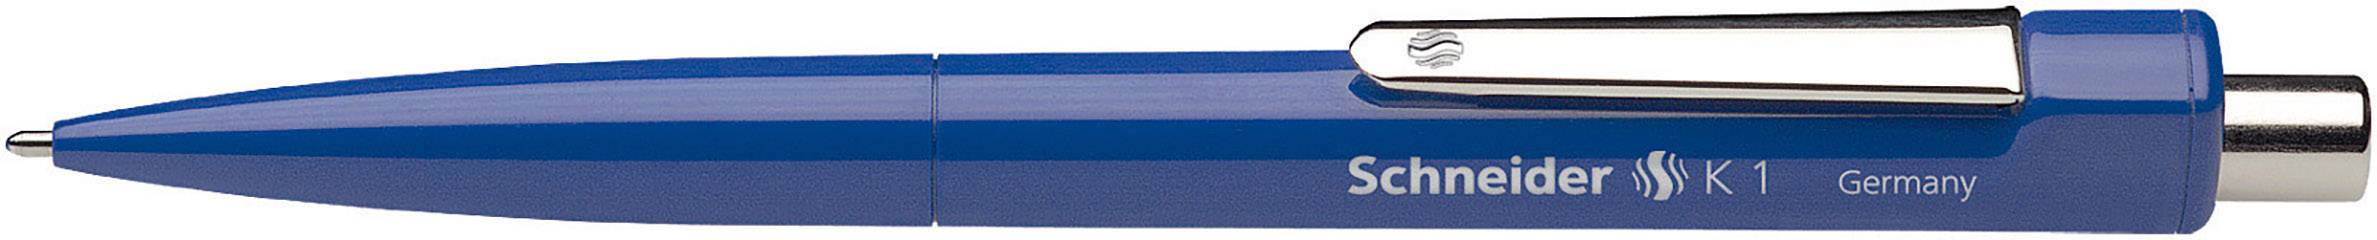 SCHNEIDER SCHREIBGERÄTE Kugelschreiber K 1 3153 0.5 mm Schreibfarbe: Blau 1 St.